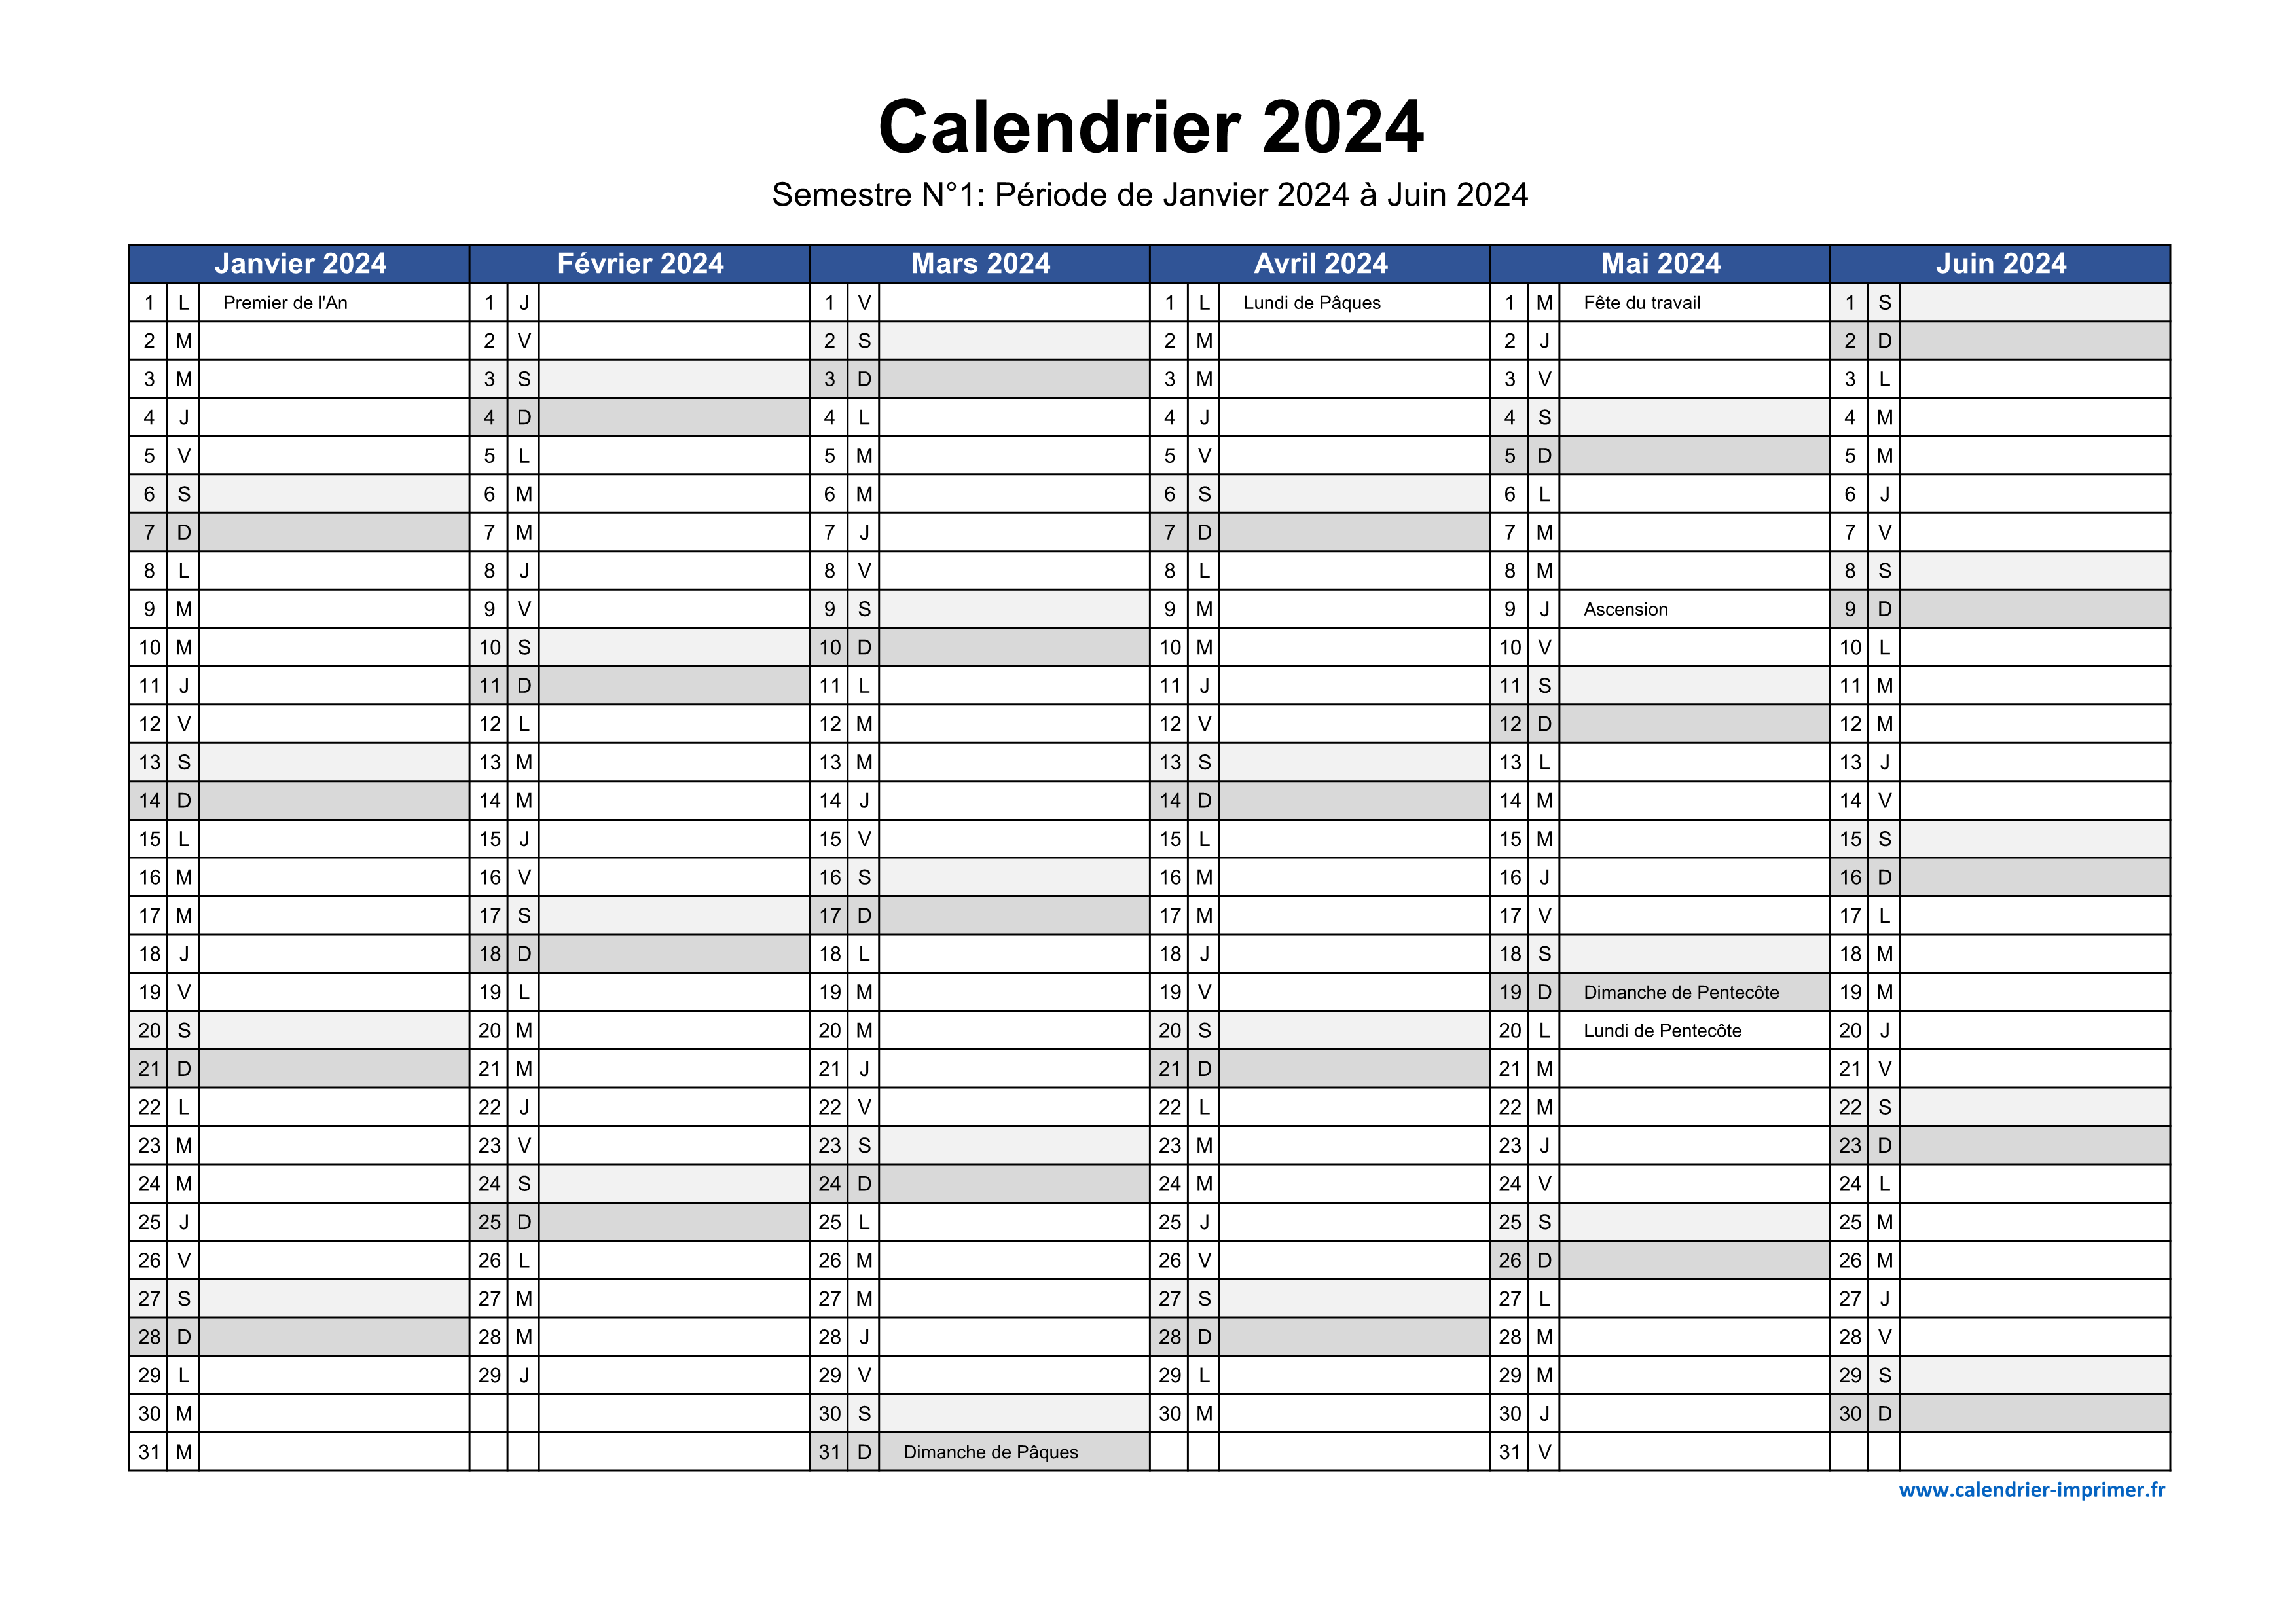 Calendrier 2024 à imprimer, agenda 2024 francais